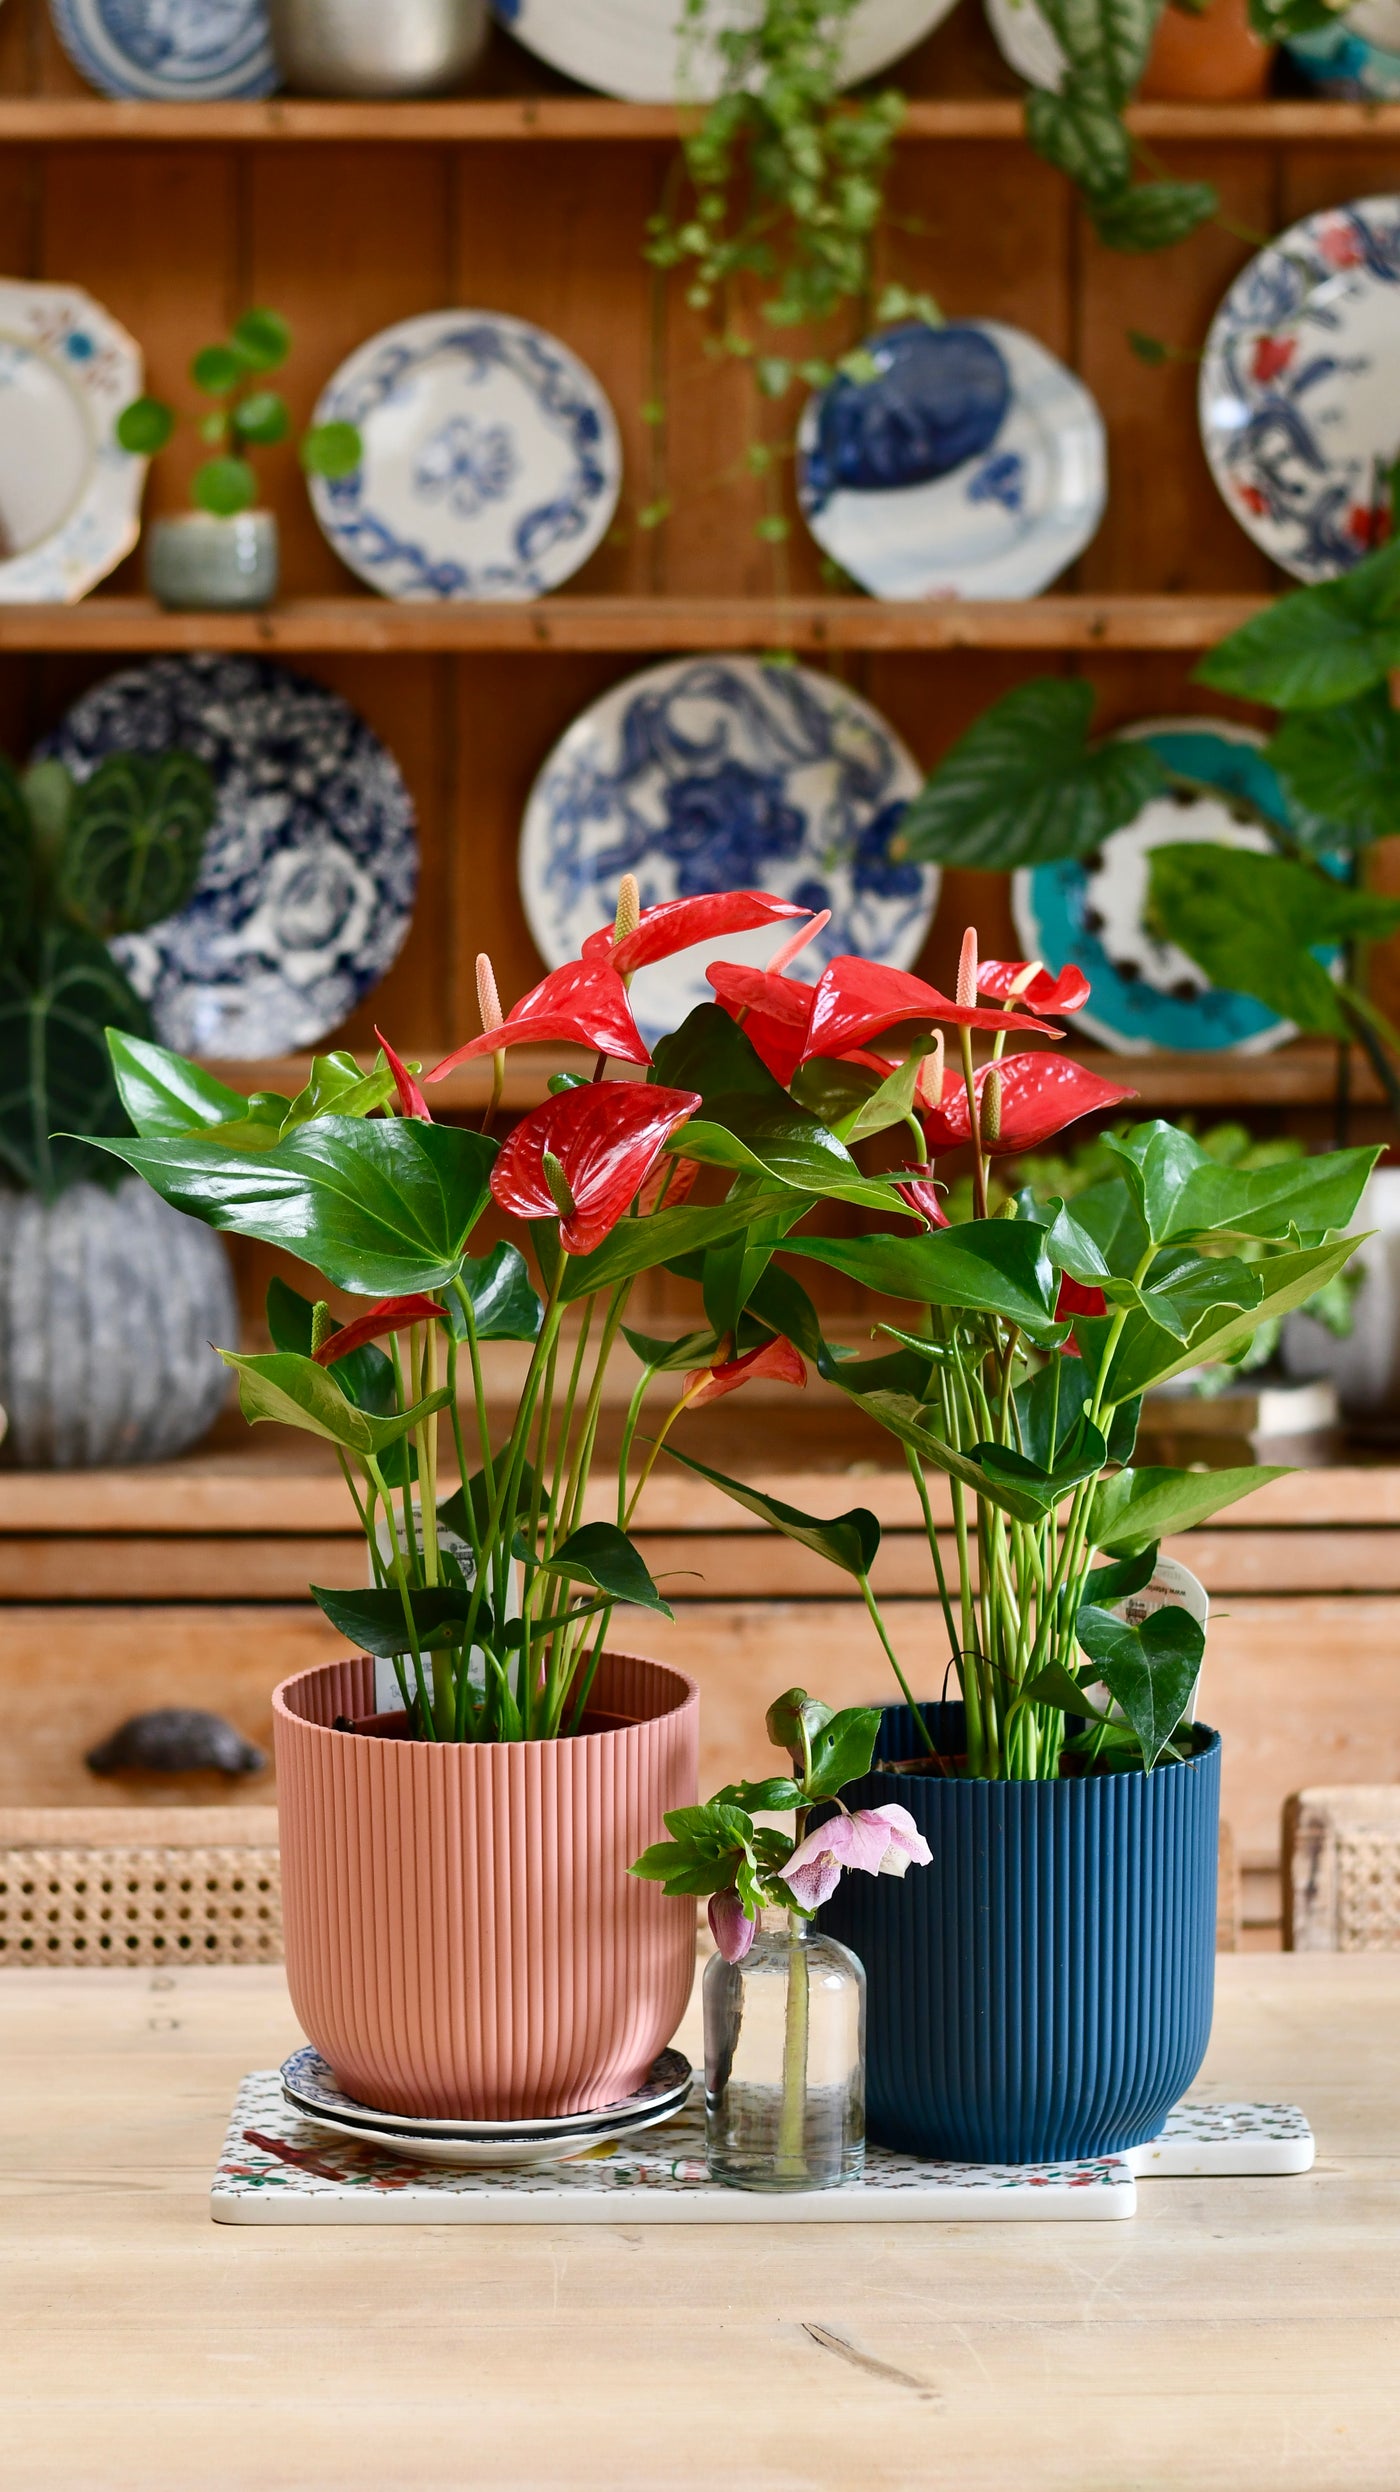 Red Anthurium Andraeanum  & Vibes Pot | Flamingo Flower